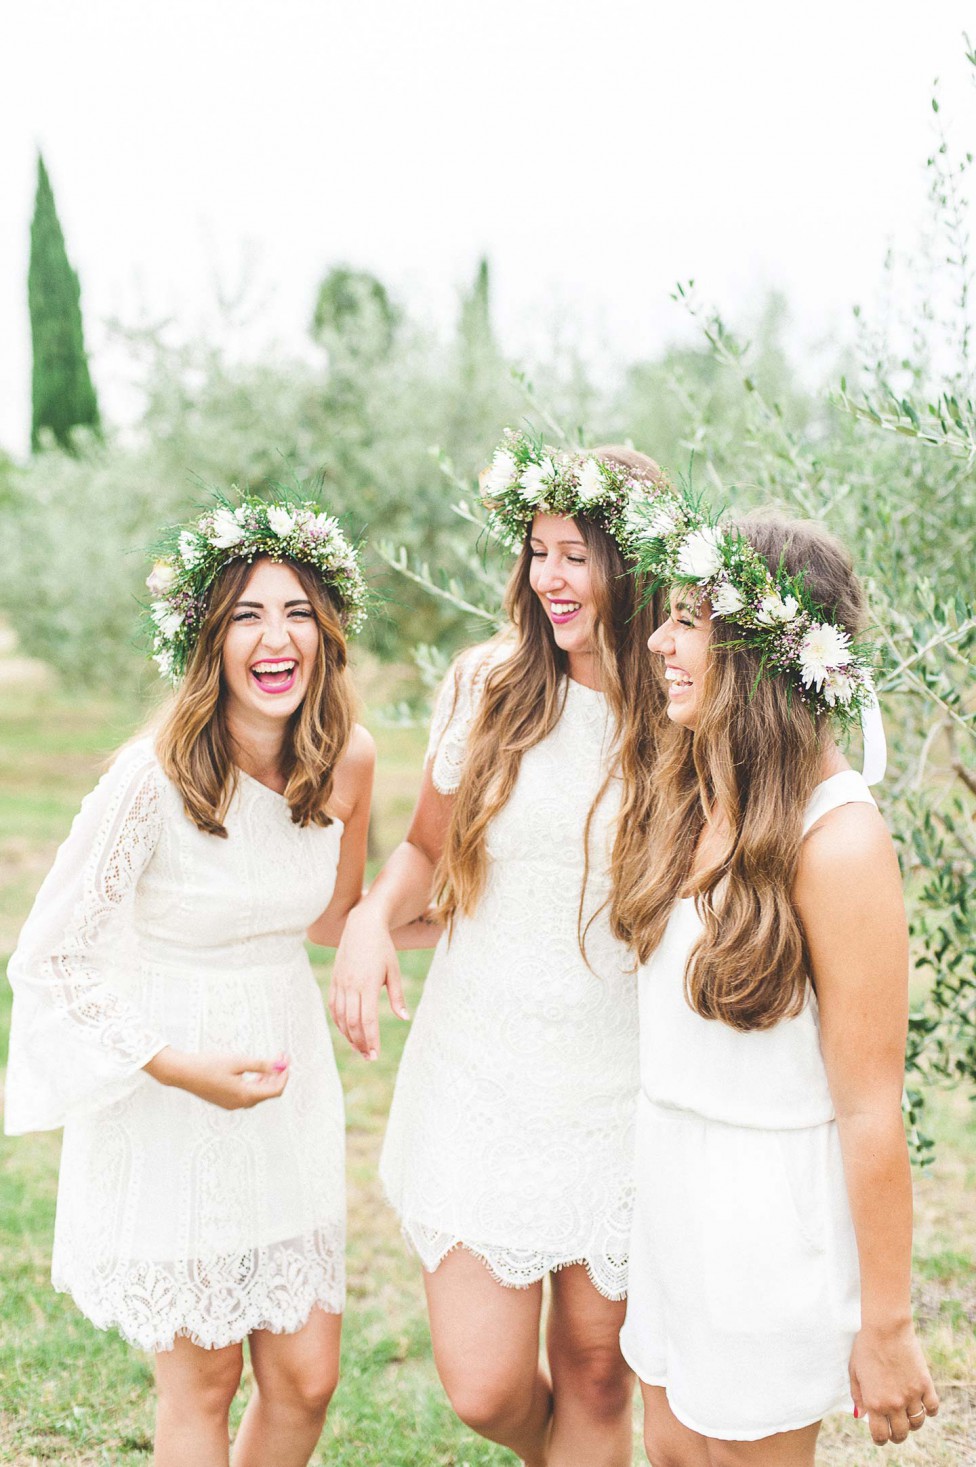 Destination-Hochzeit Italien: Heiraten unter Olivenbäumen